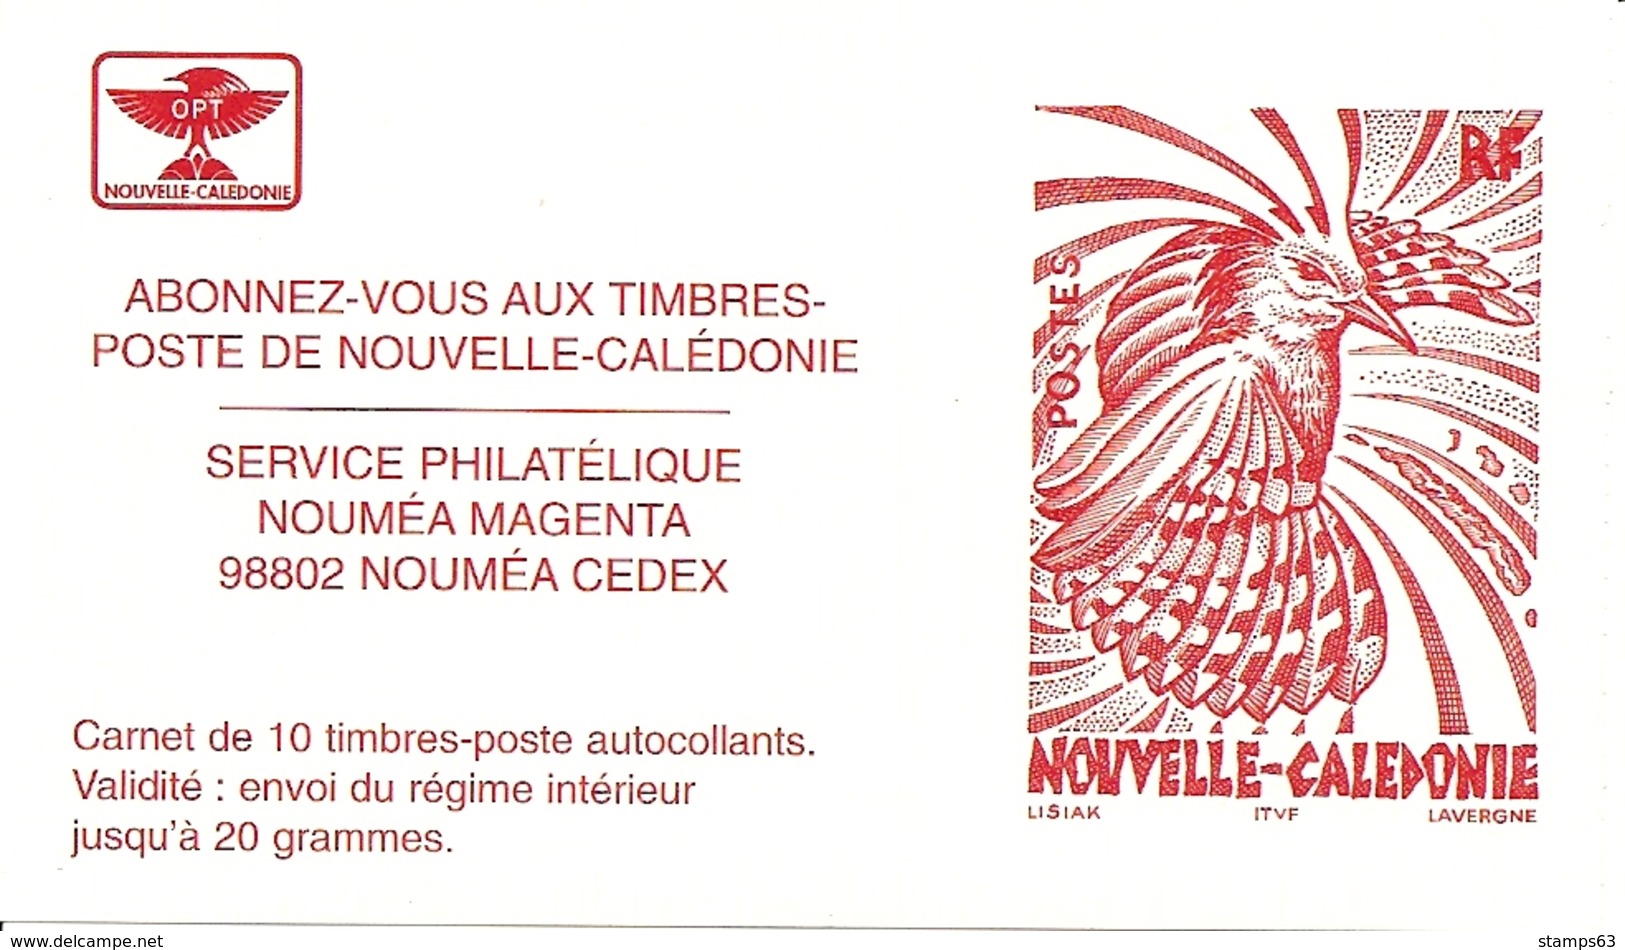 NEW CALEDONIA / NOUV CALEDONIE, 1998, Booklet / Carnet 11 , 10x TVP, Cagou De Lisiak - Carnets